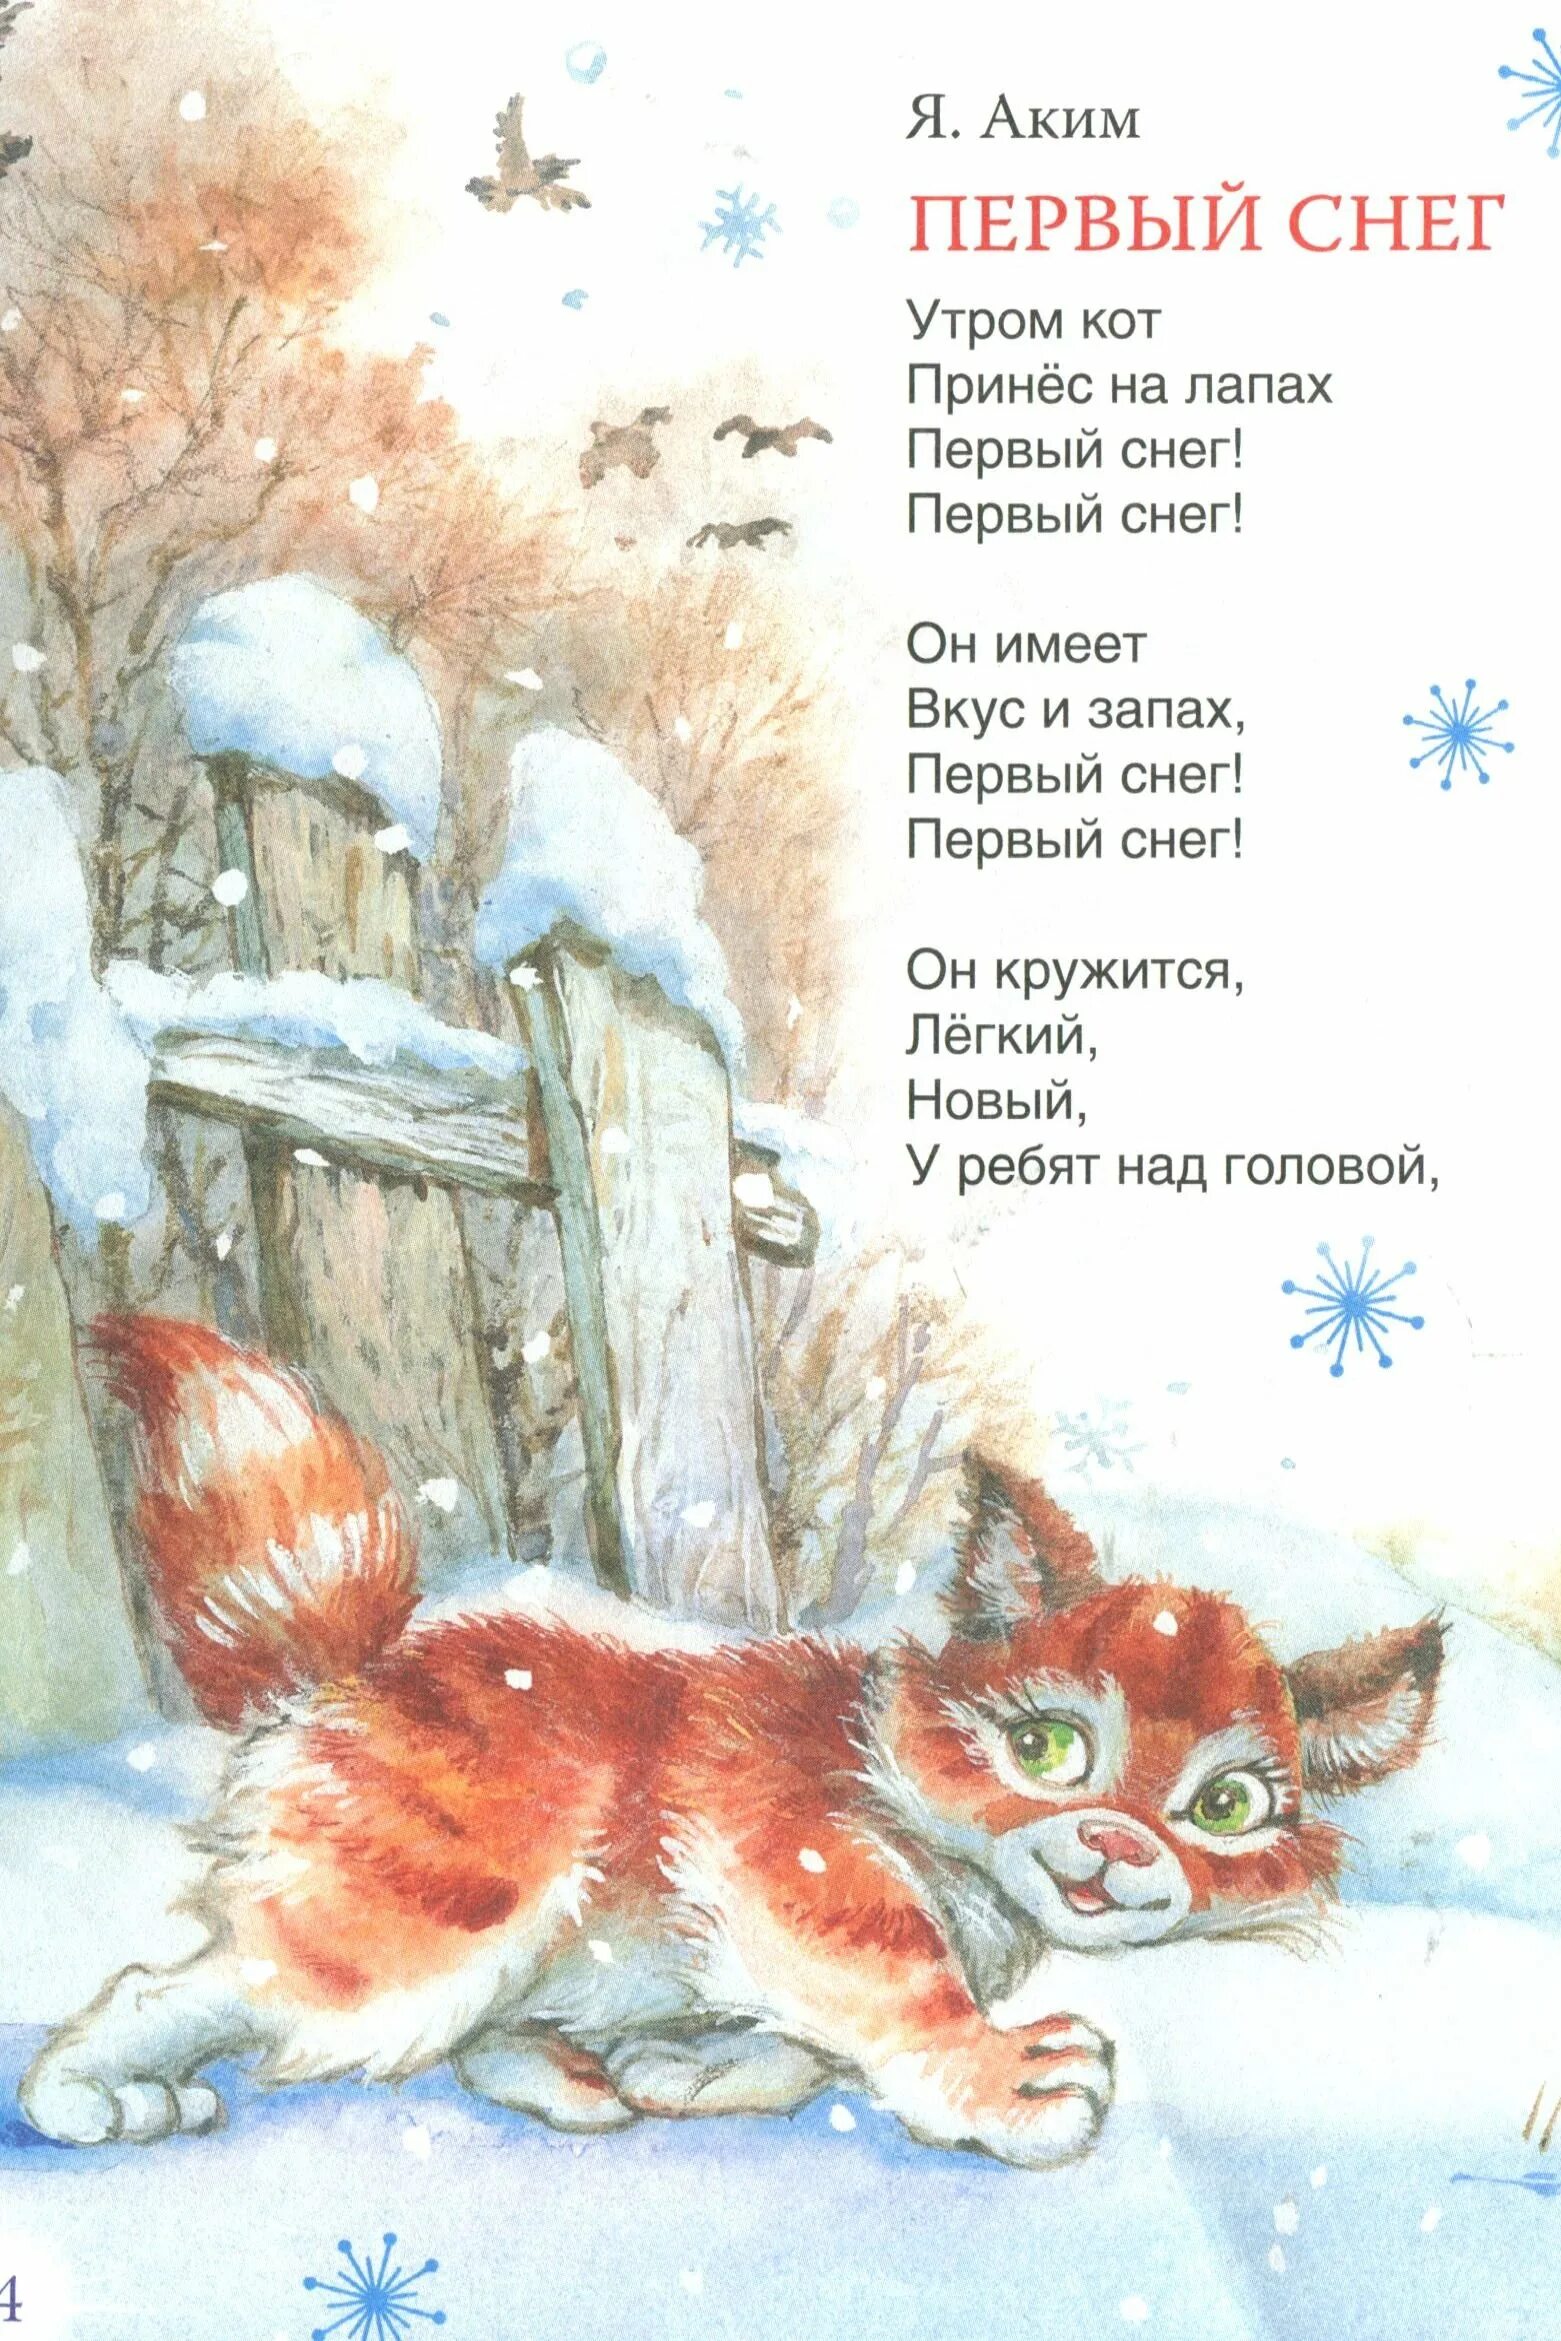 Сугроб читать. Первый снег стих. Утром кот принес на лапах первый снег.